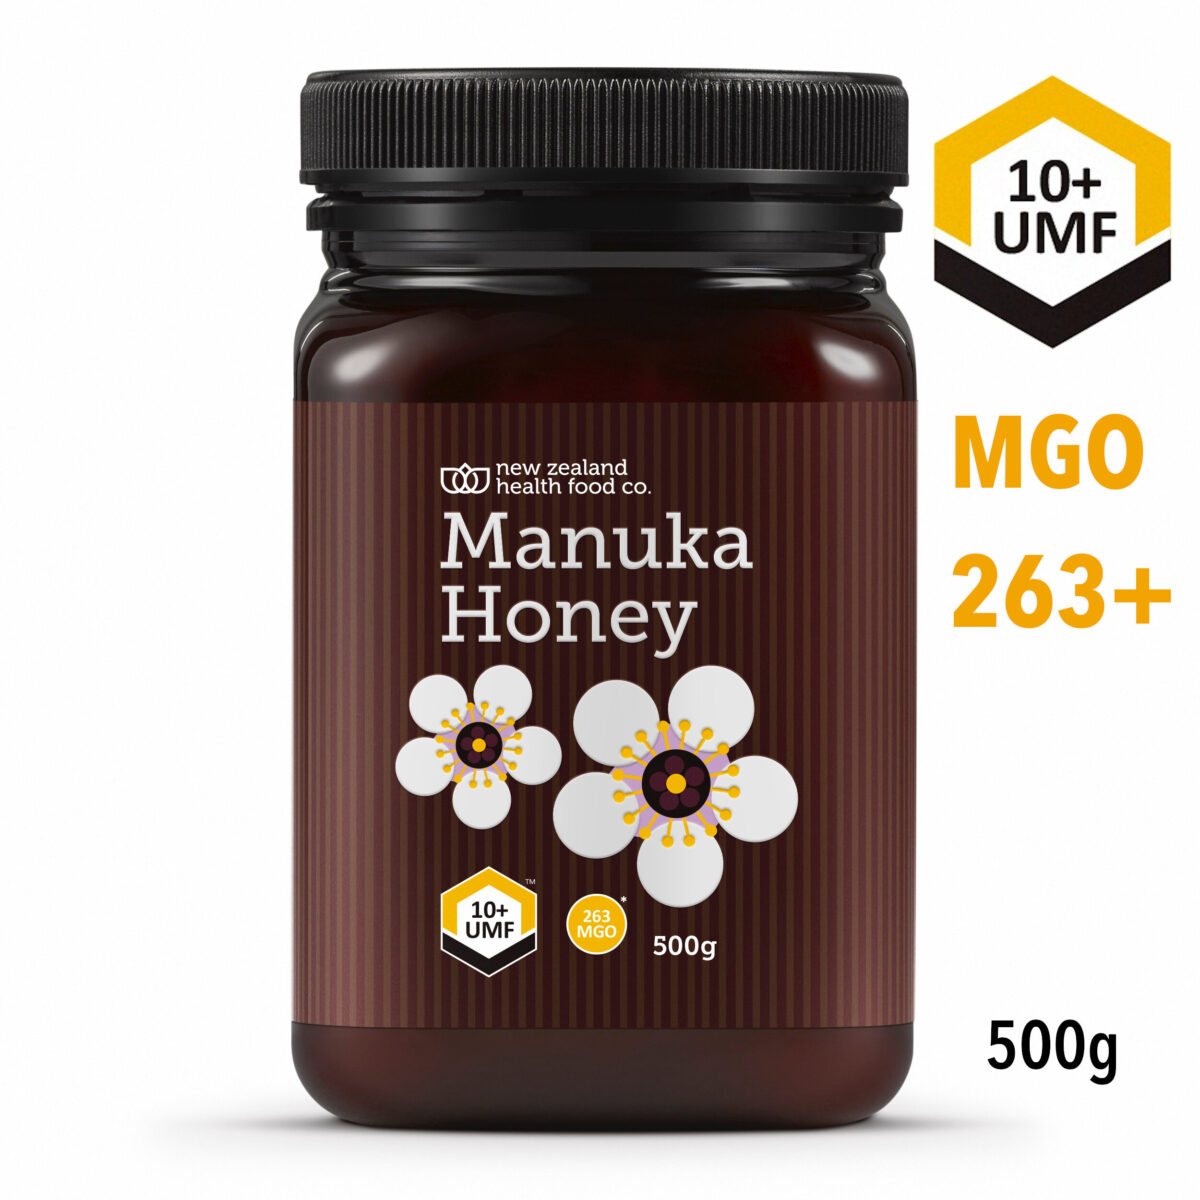 NZHF マヌカハニー UMF10+ MGO263 500g - ハニーマーケット